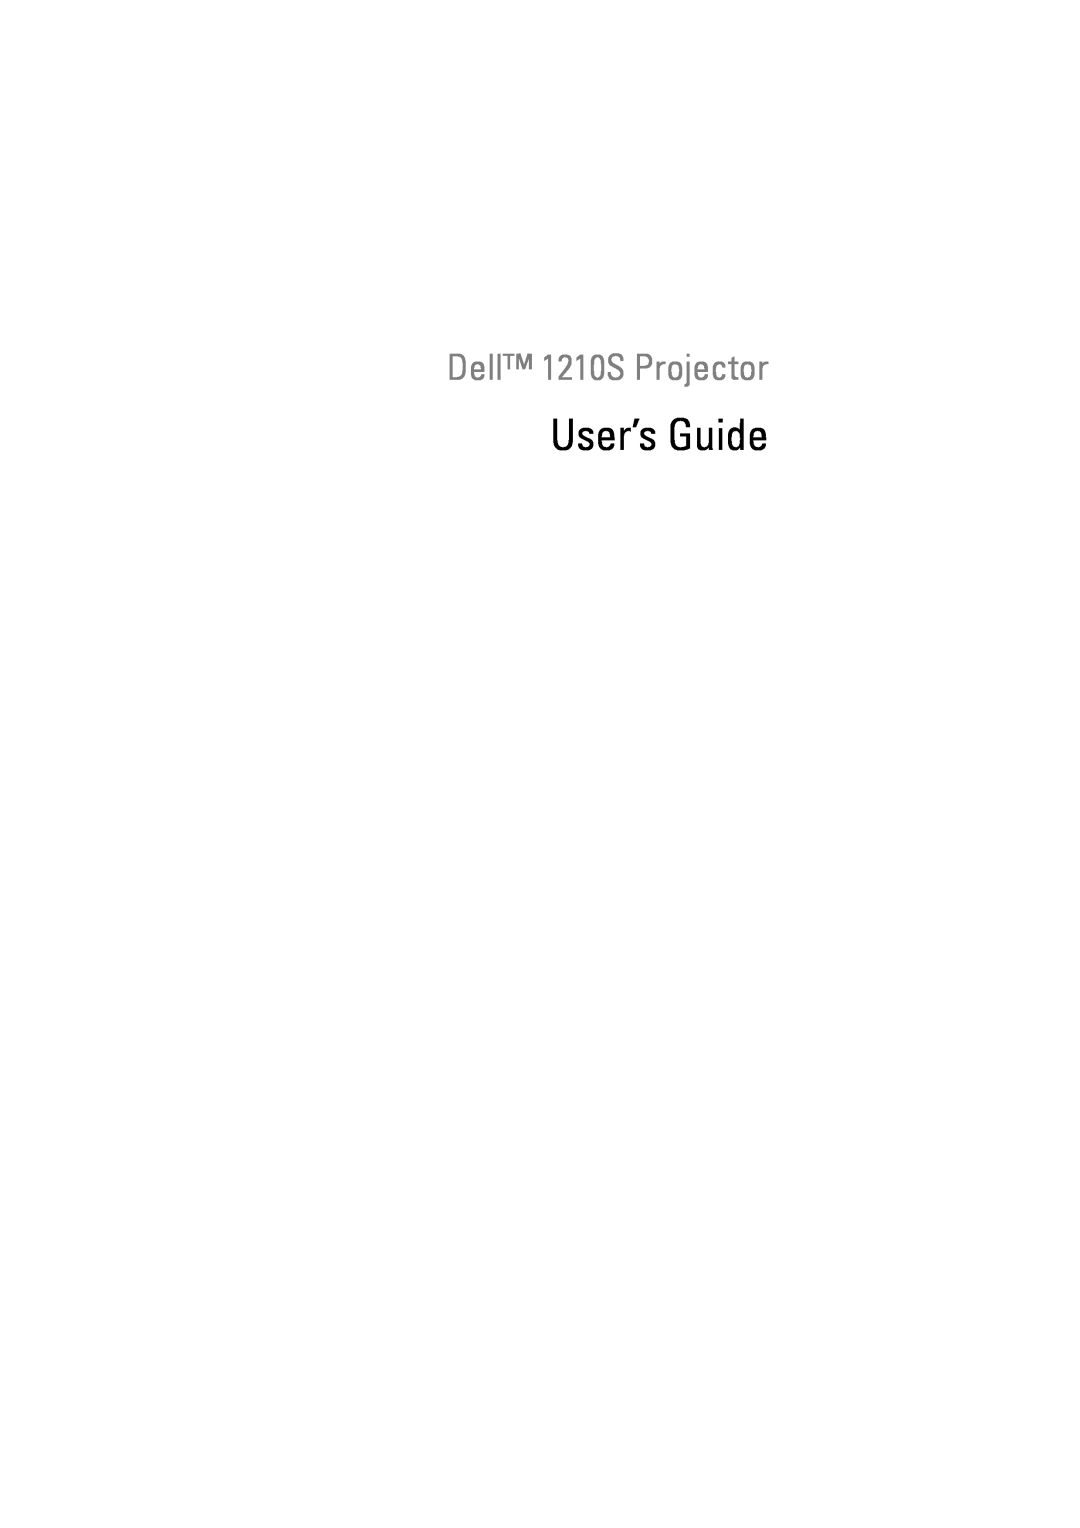 Dell manual User’s Guide, Dell 1210S Projector 